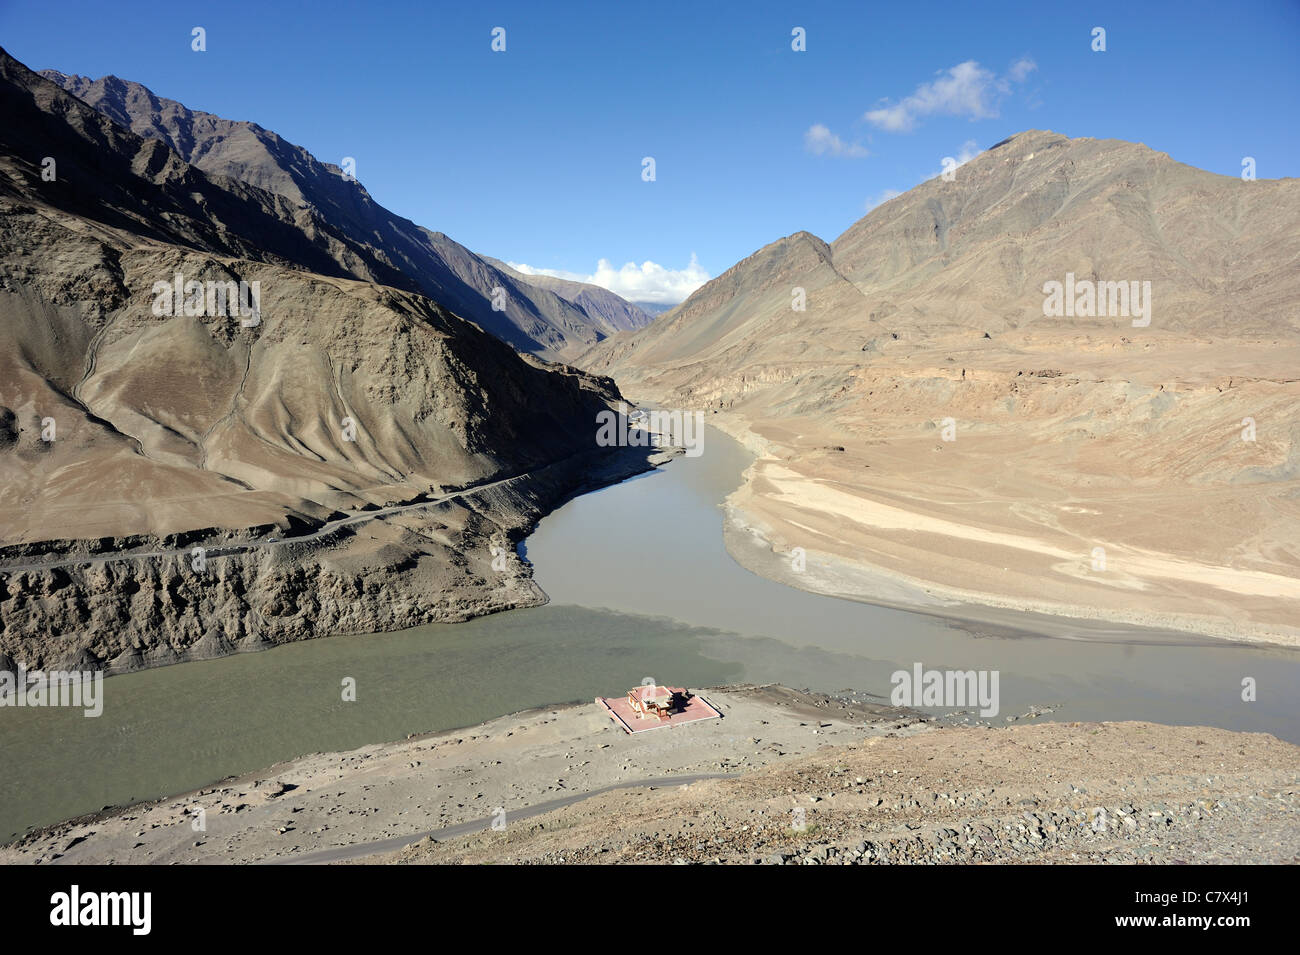 La confluencia de los ríos y Bajo Zanskar, el Indo cerca de Nimu. El Indus proviene de la izquierda. Foto de stock